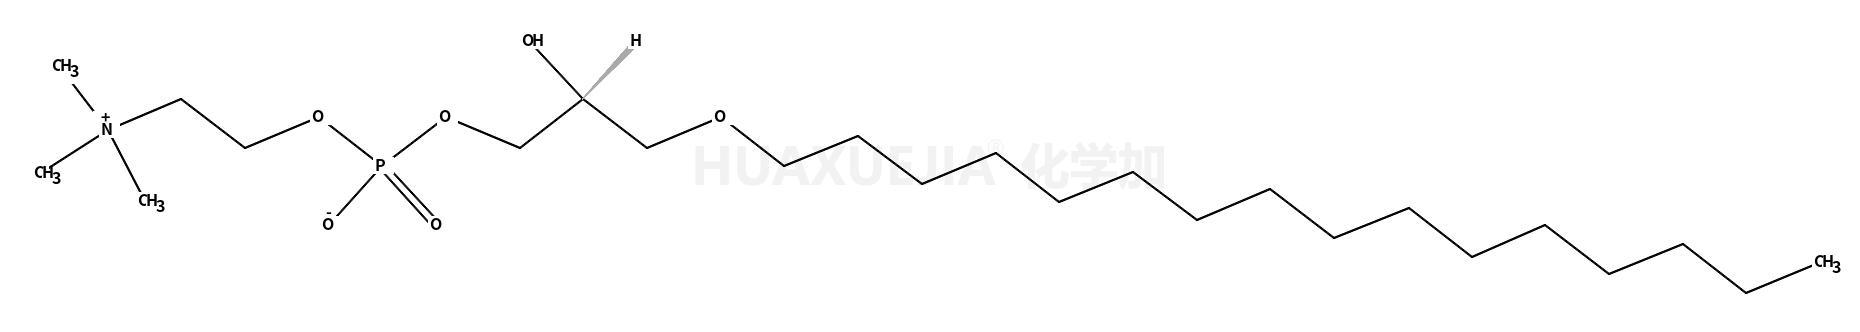 1-O-hexadecyl-2-hydroxy-sn-glycero-3-phosphocholine